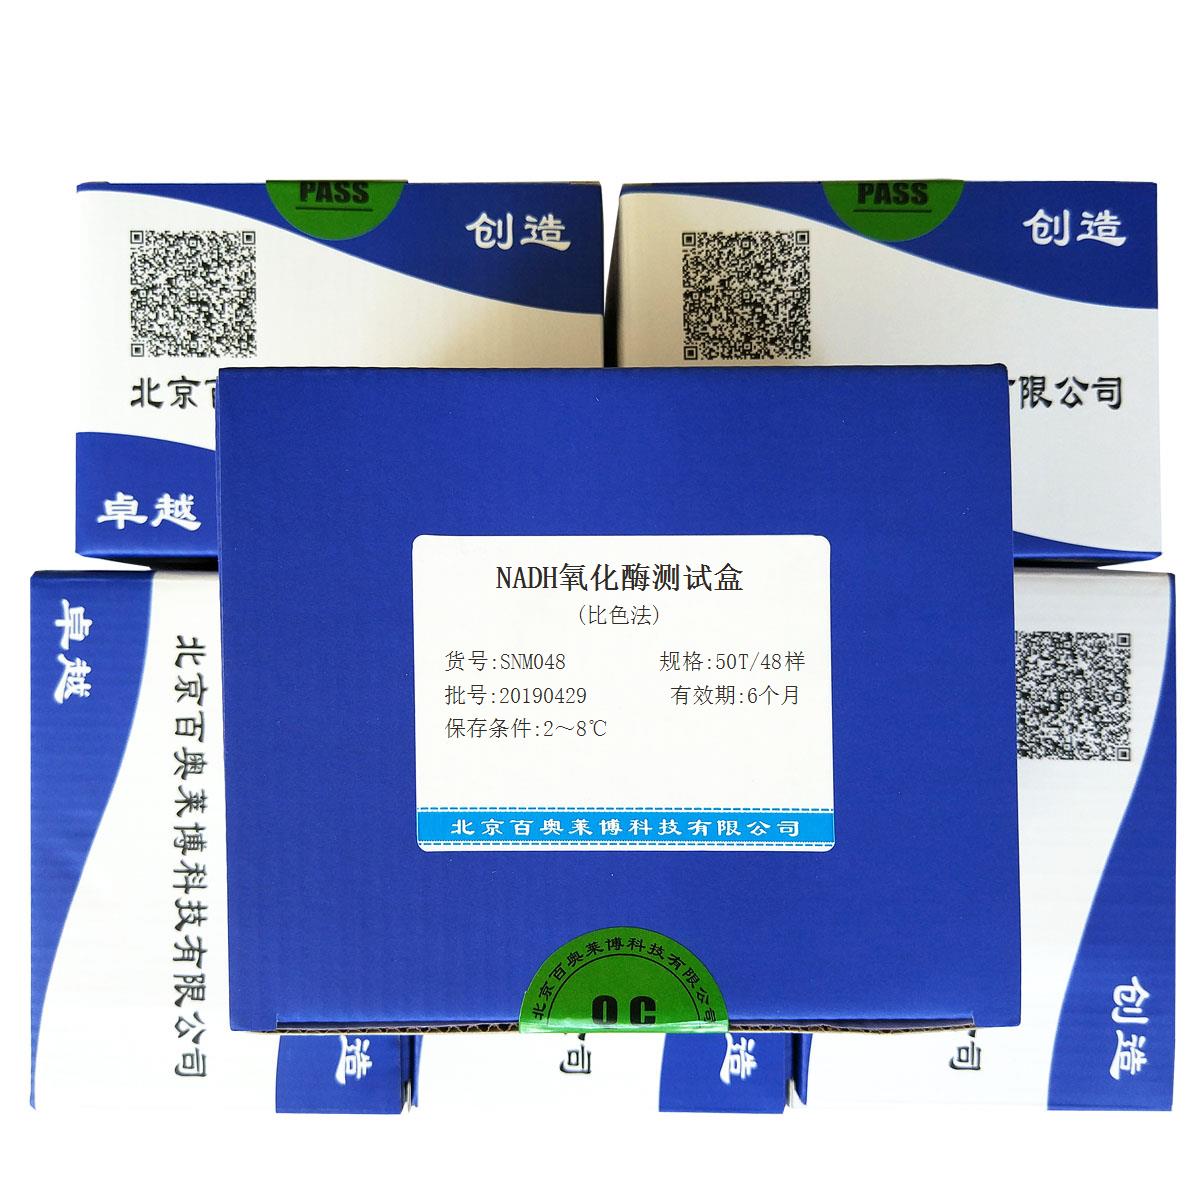 NADH氧化酶测试盒(比色法)北京供应商